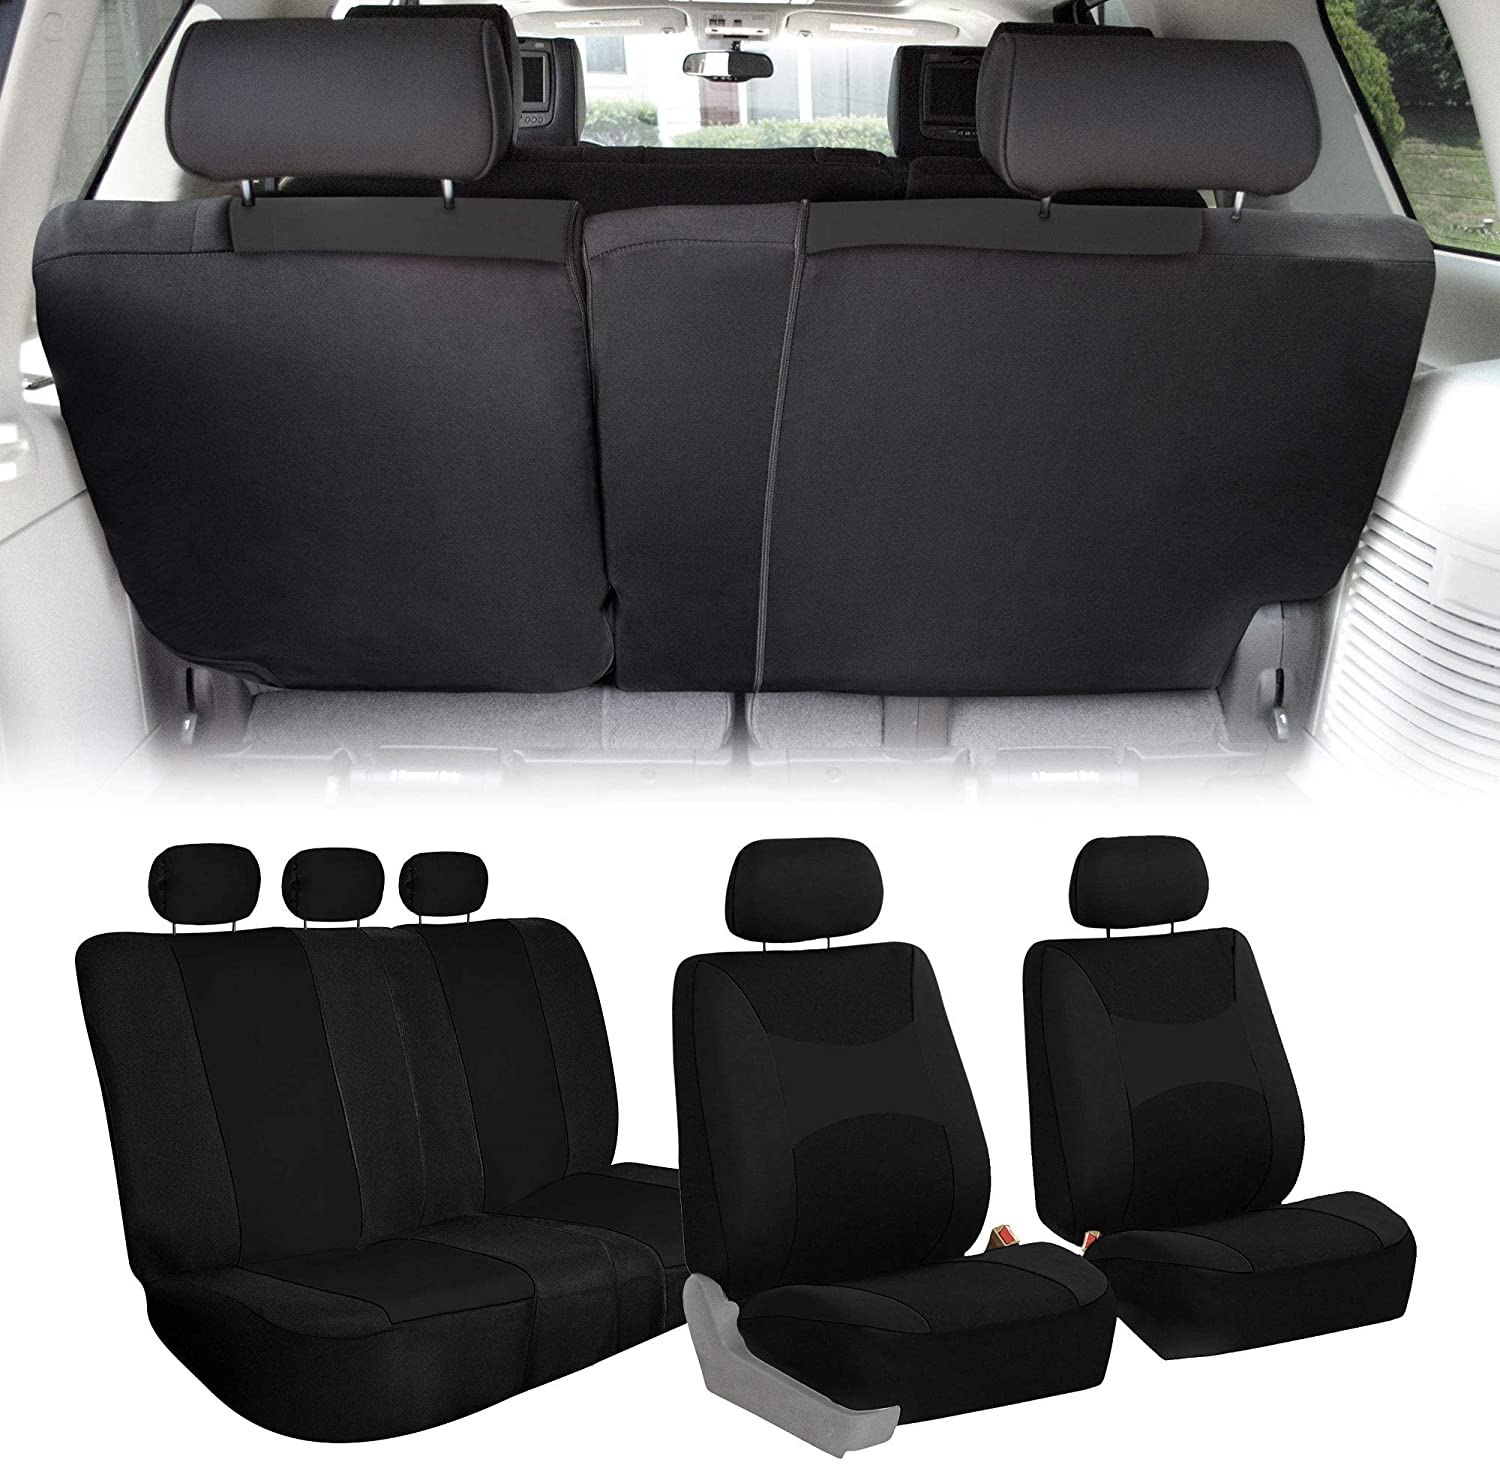 Light & Breezy Full Coverage Car Seat Covers - Full Set Black